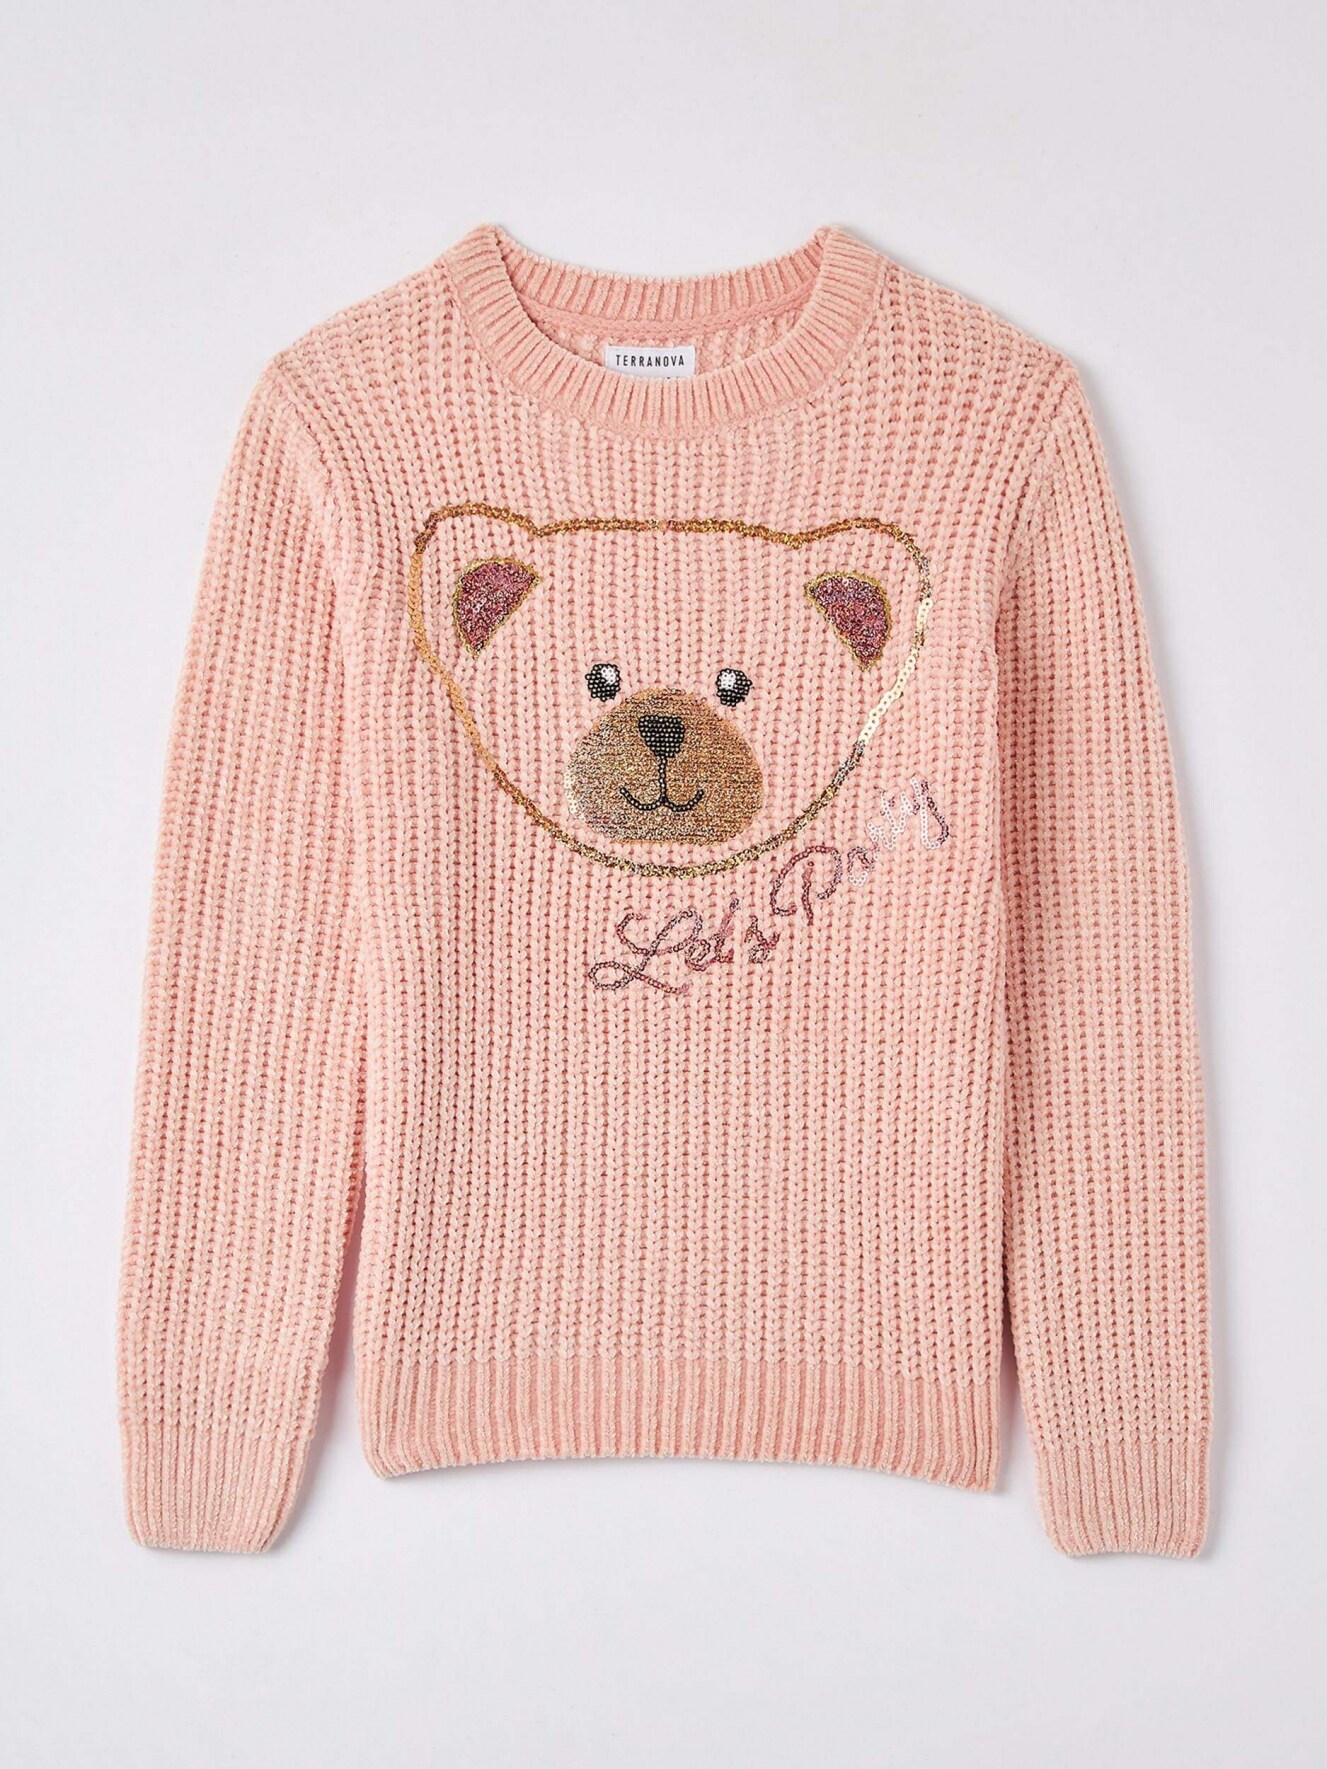 Maglia con stampa orso luccicante Rosa chiaro - Acquista Online